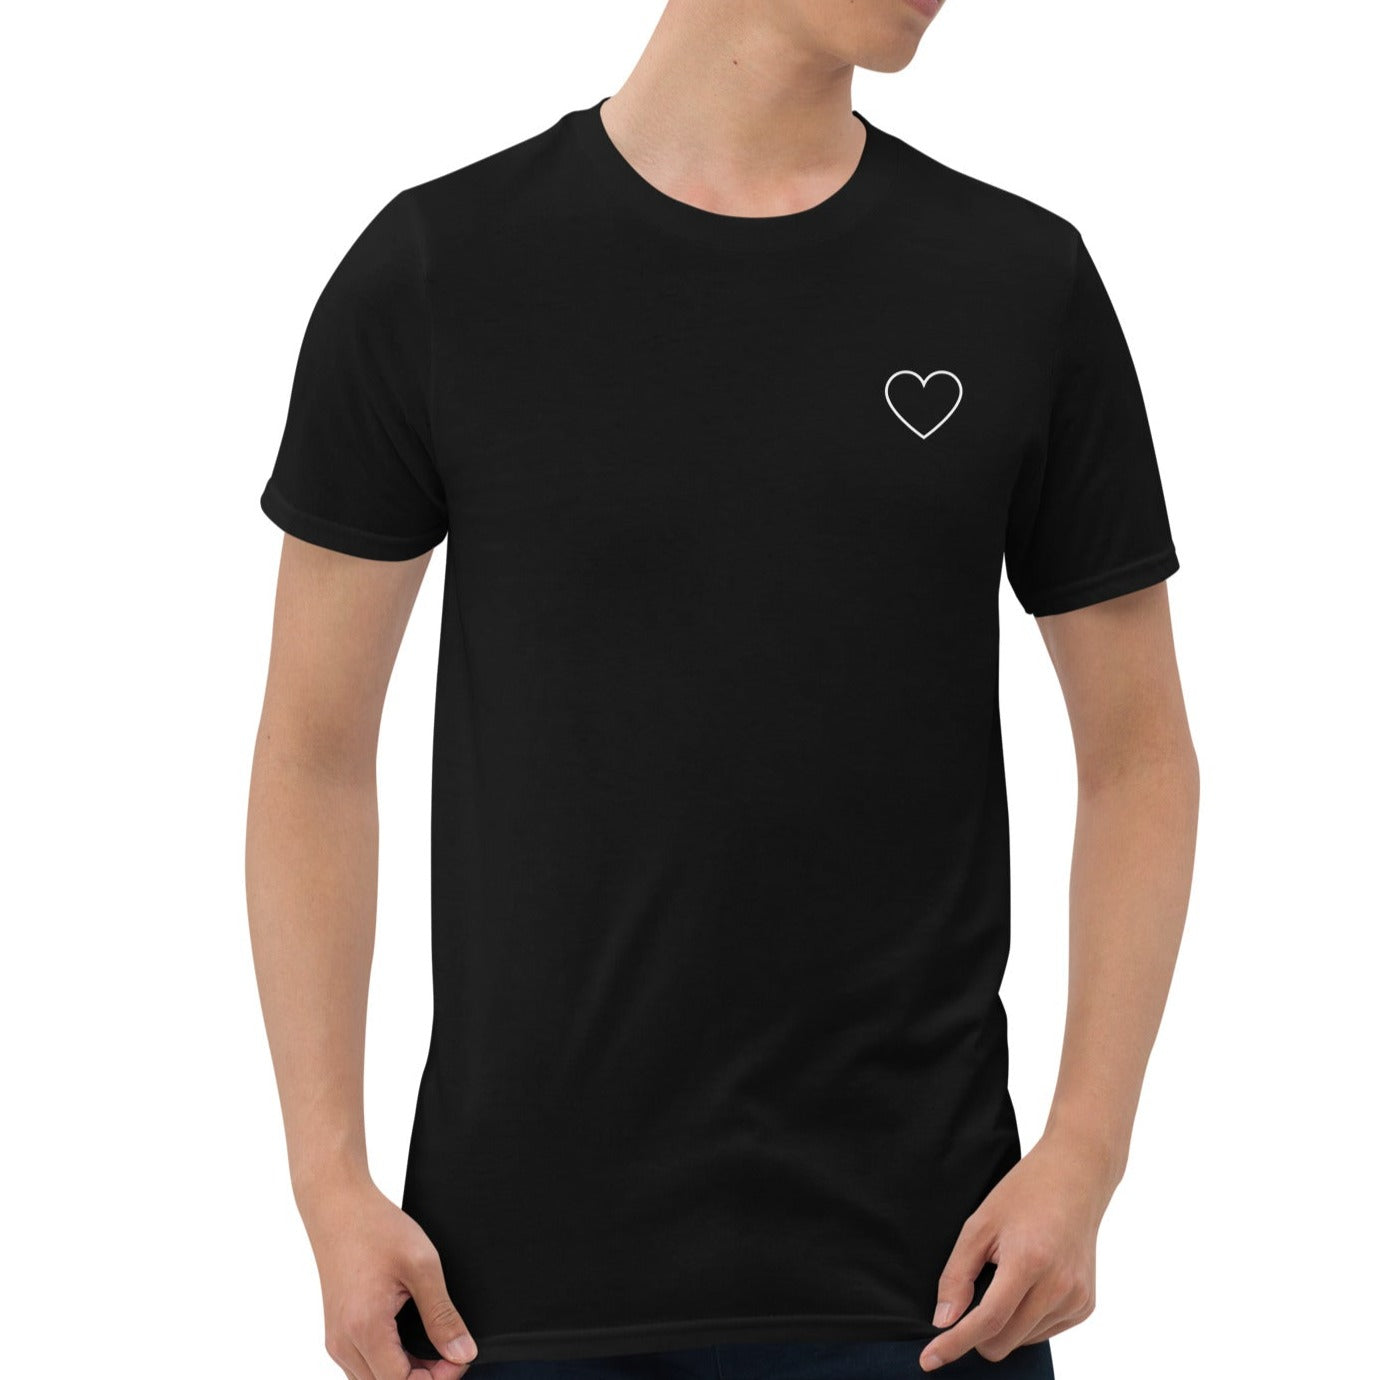 Unisex marškinėliai: Minimalistinė balta širdelė